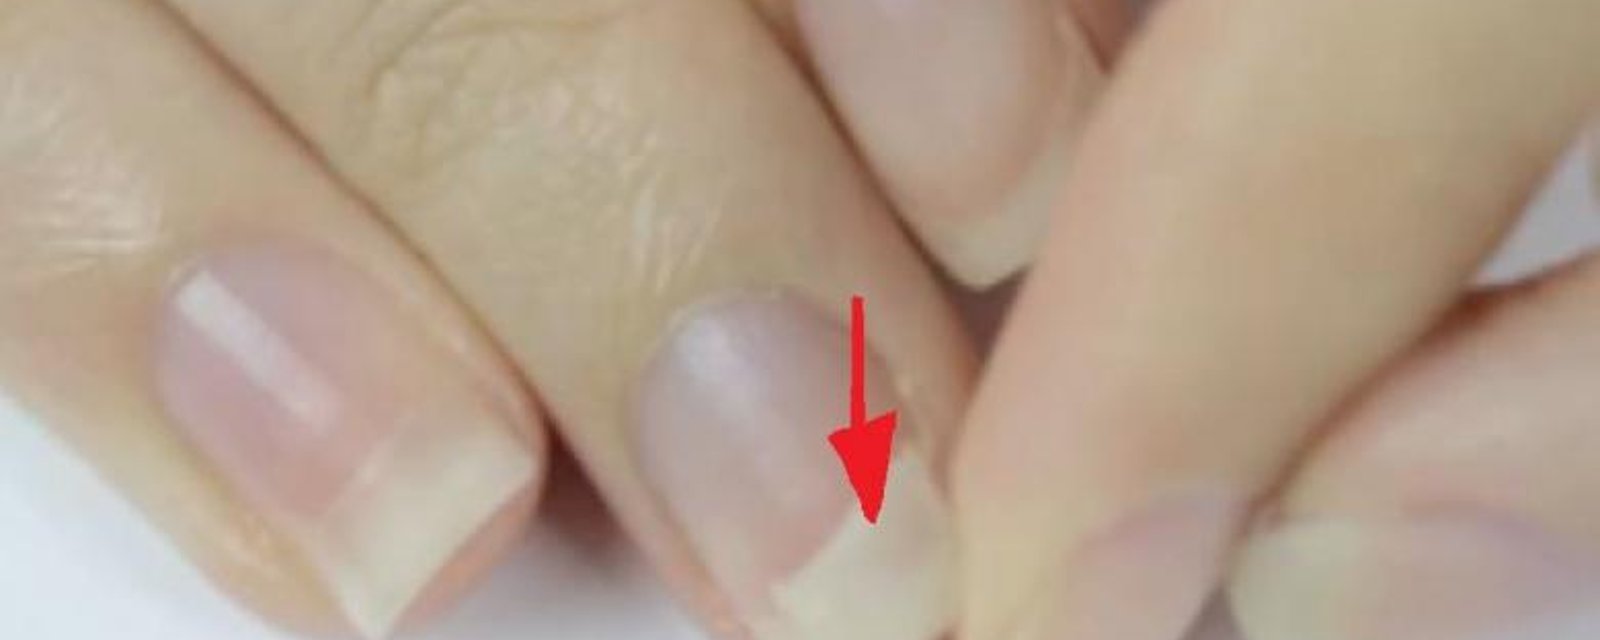 Astuce beauté : Comment réparer un ongle brisé sans le couper !